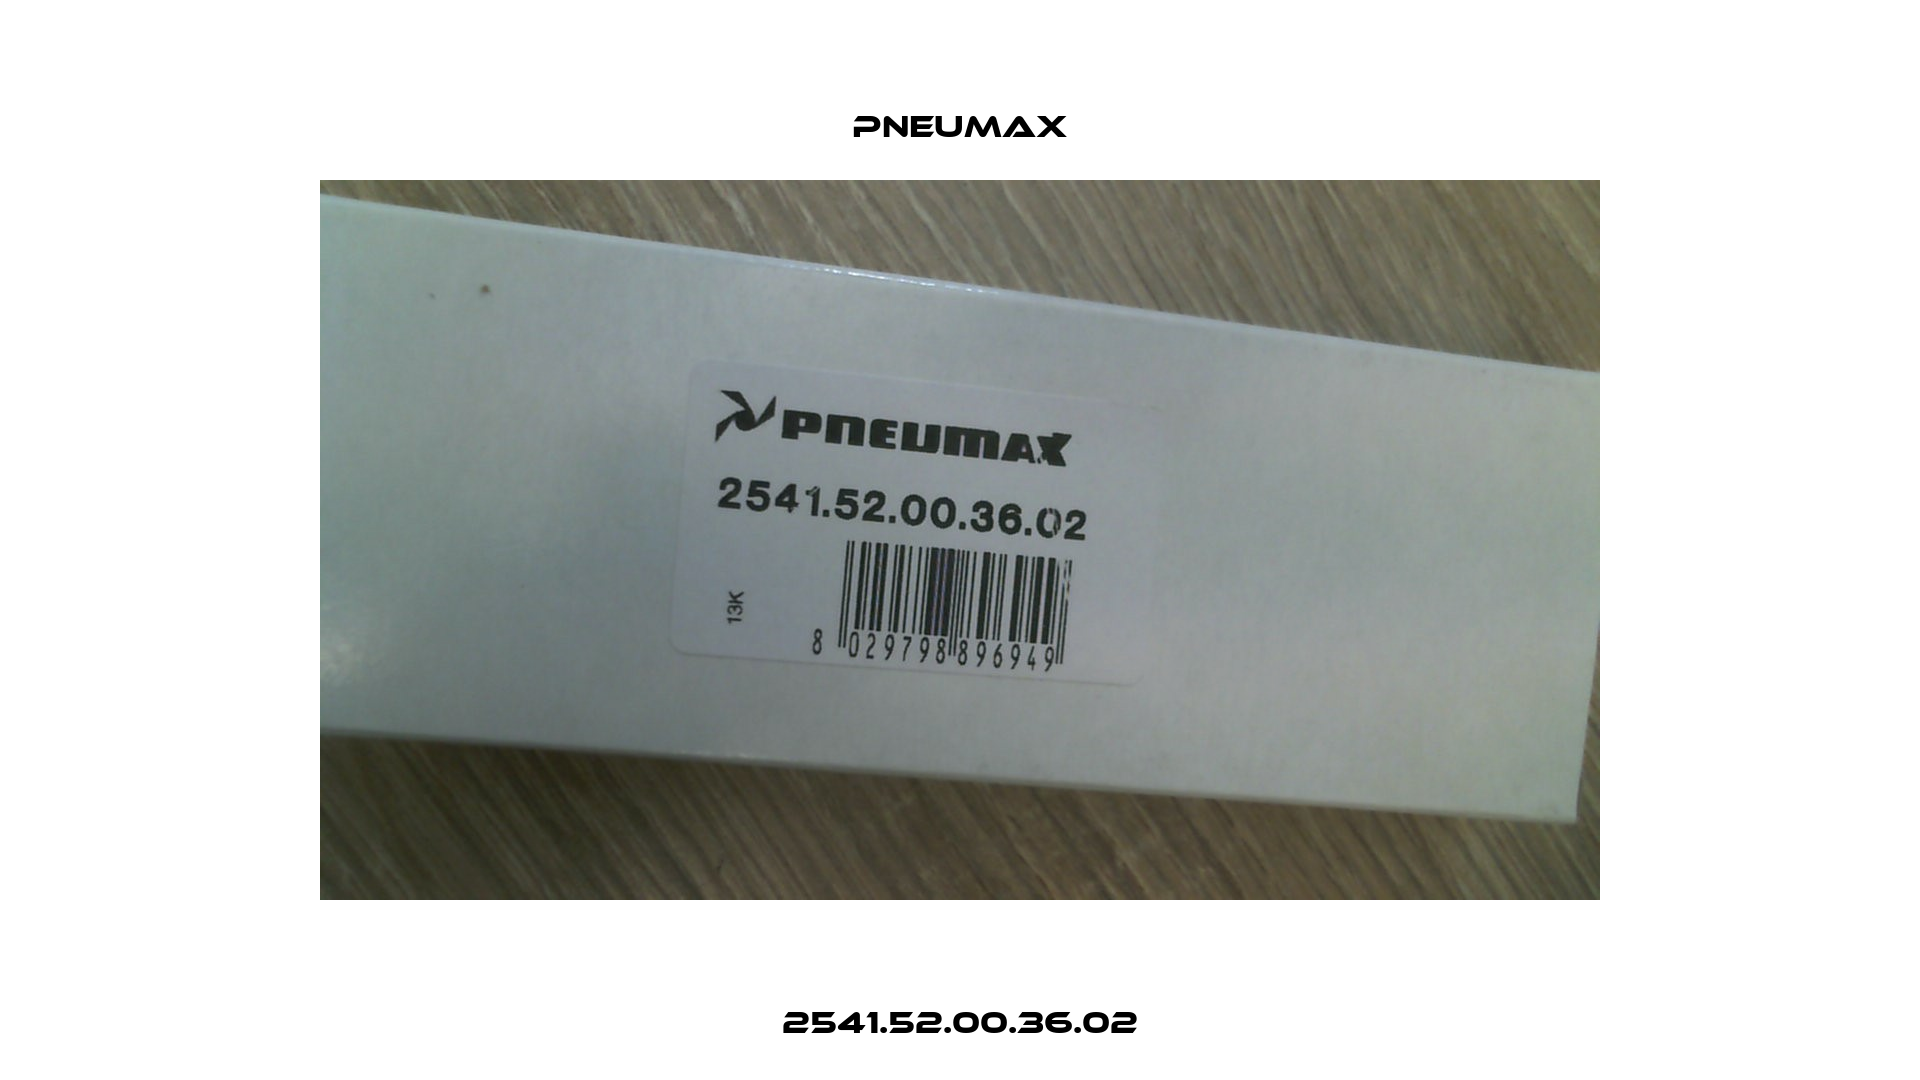 2541.52.00.36.02 Pneumax